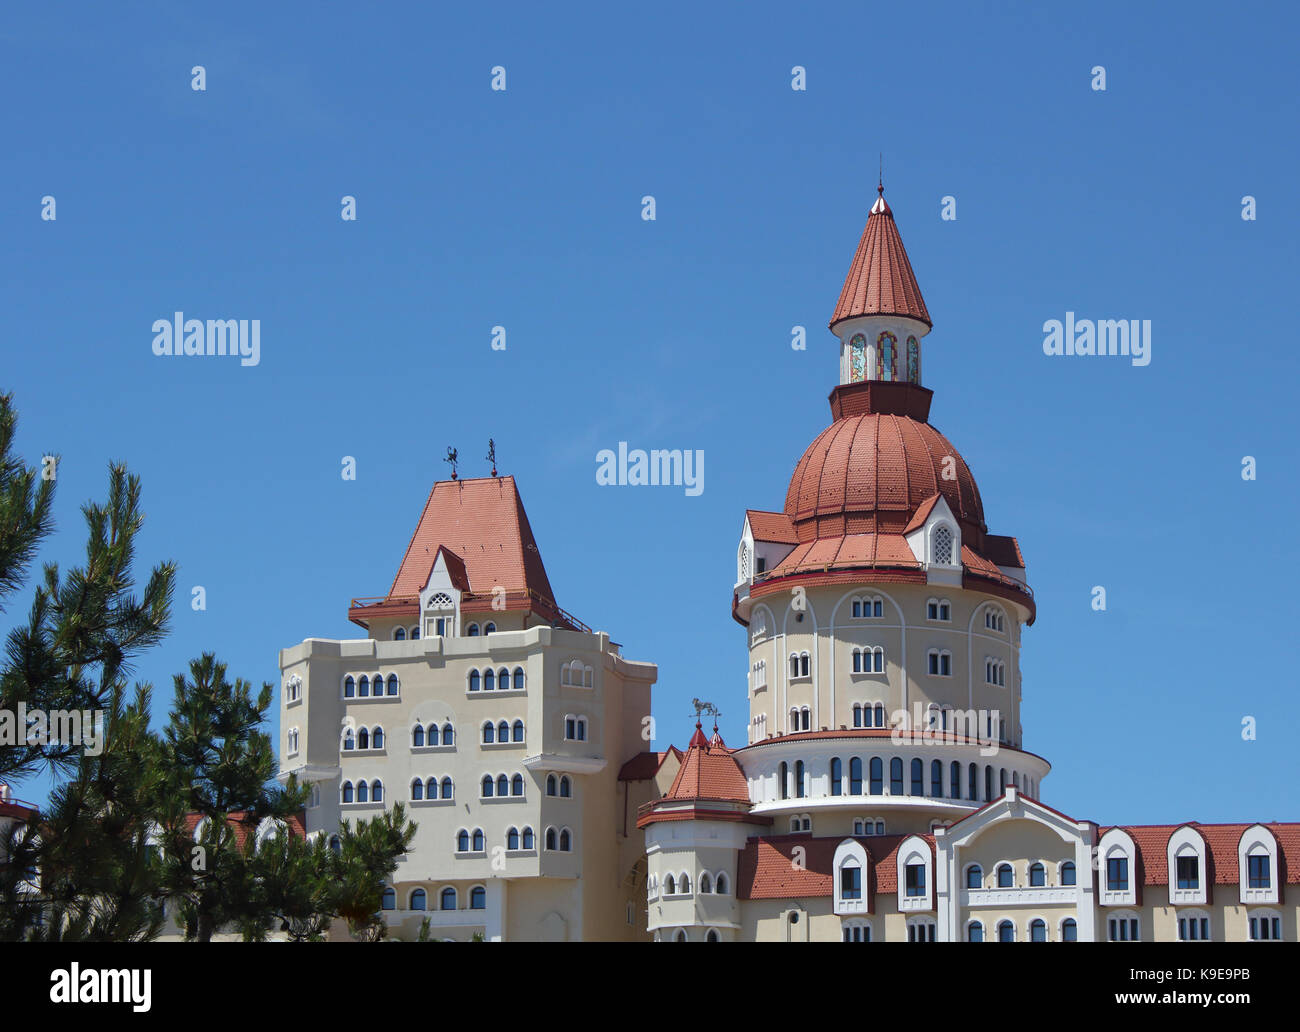 Moderne Burg-art Gebäude über den blauen Himmel Foto Stockfoto